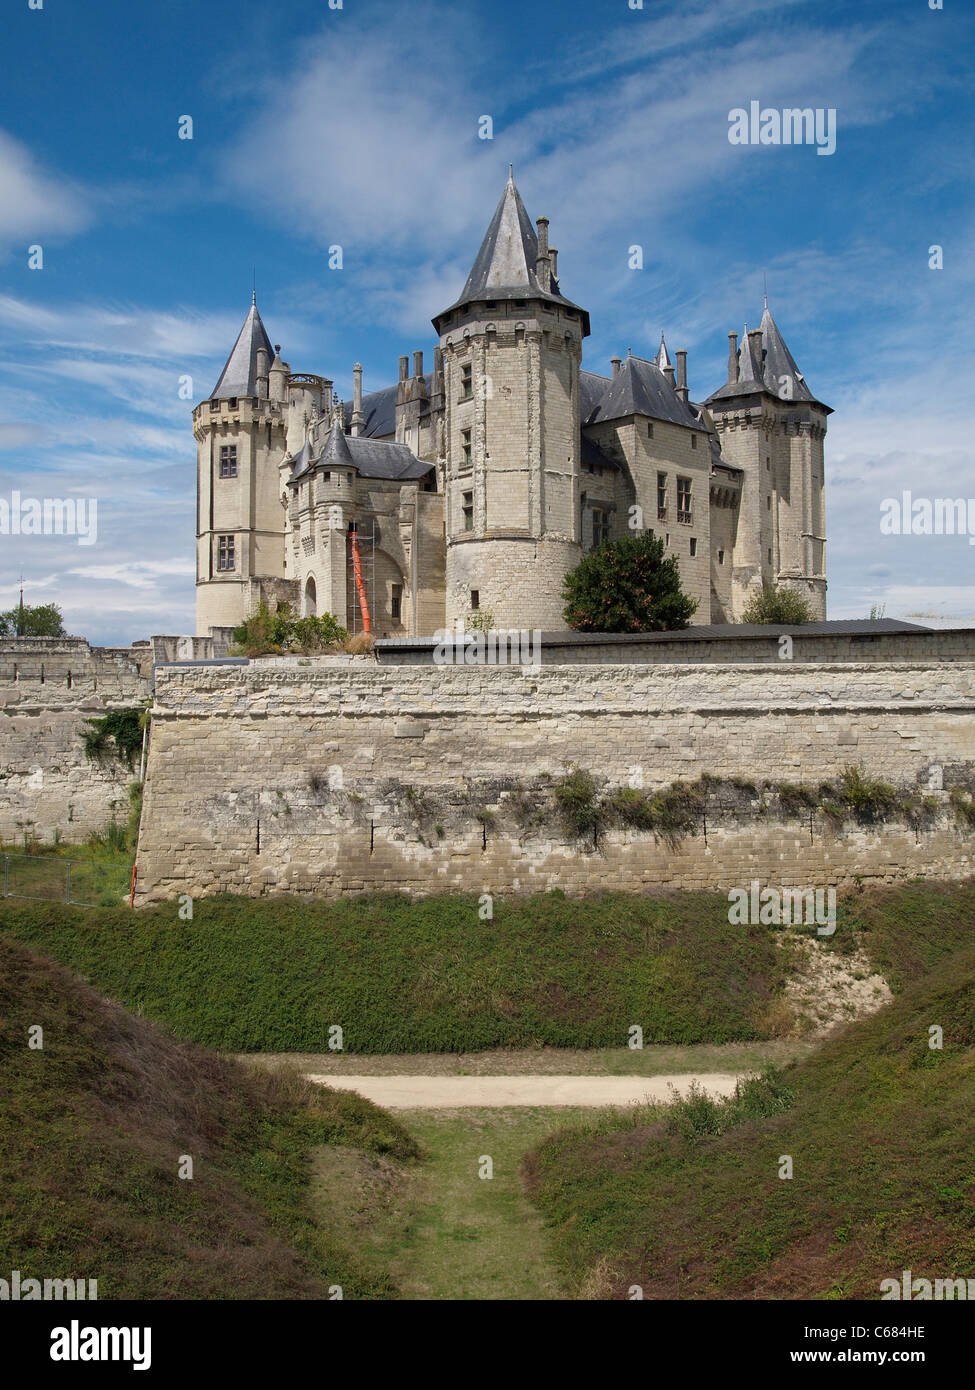 The Chateau de Saumur castle, Loire valley, France Stock Photo